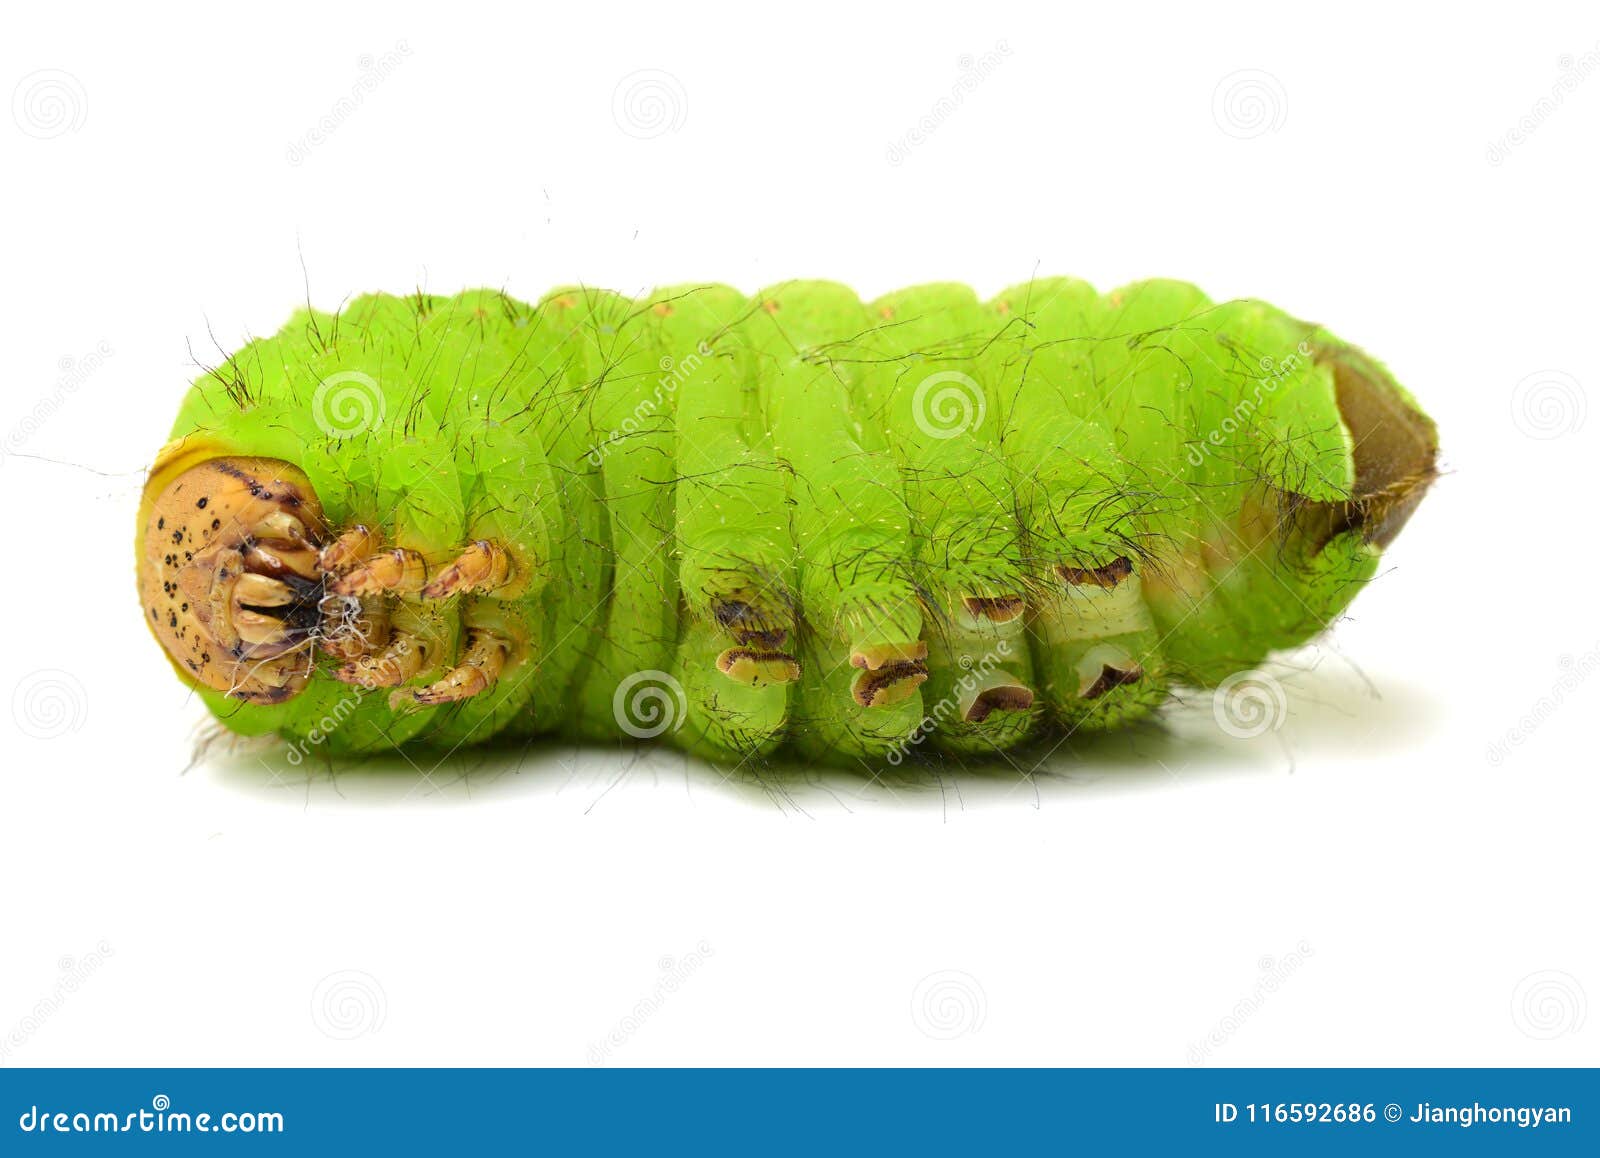 Зеленый червь оригинал. Маленькие зелененькие червячки. Игрушка зеленый червь. Мелкий зеленый червь.